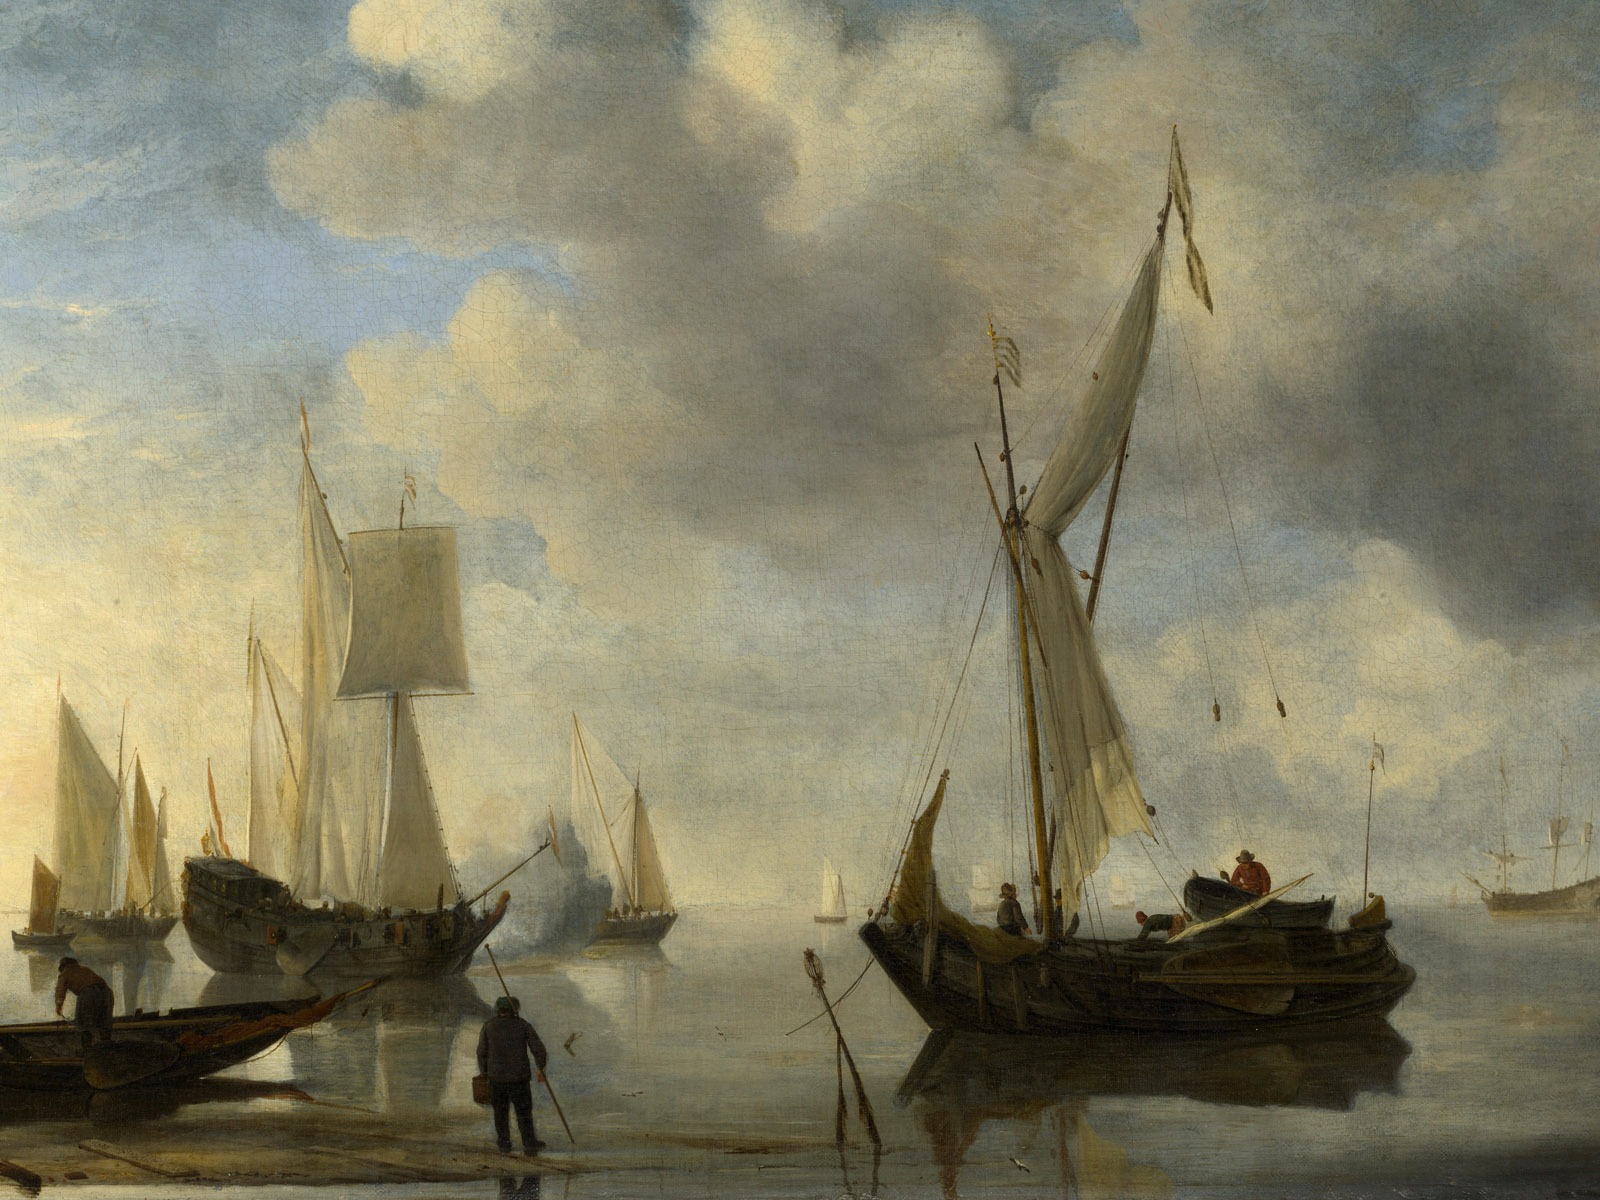 伦敦画廊帆船 壁纸(二)16 - 1600x1200